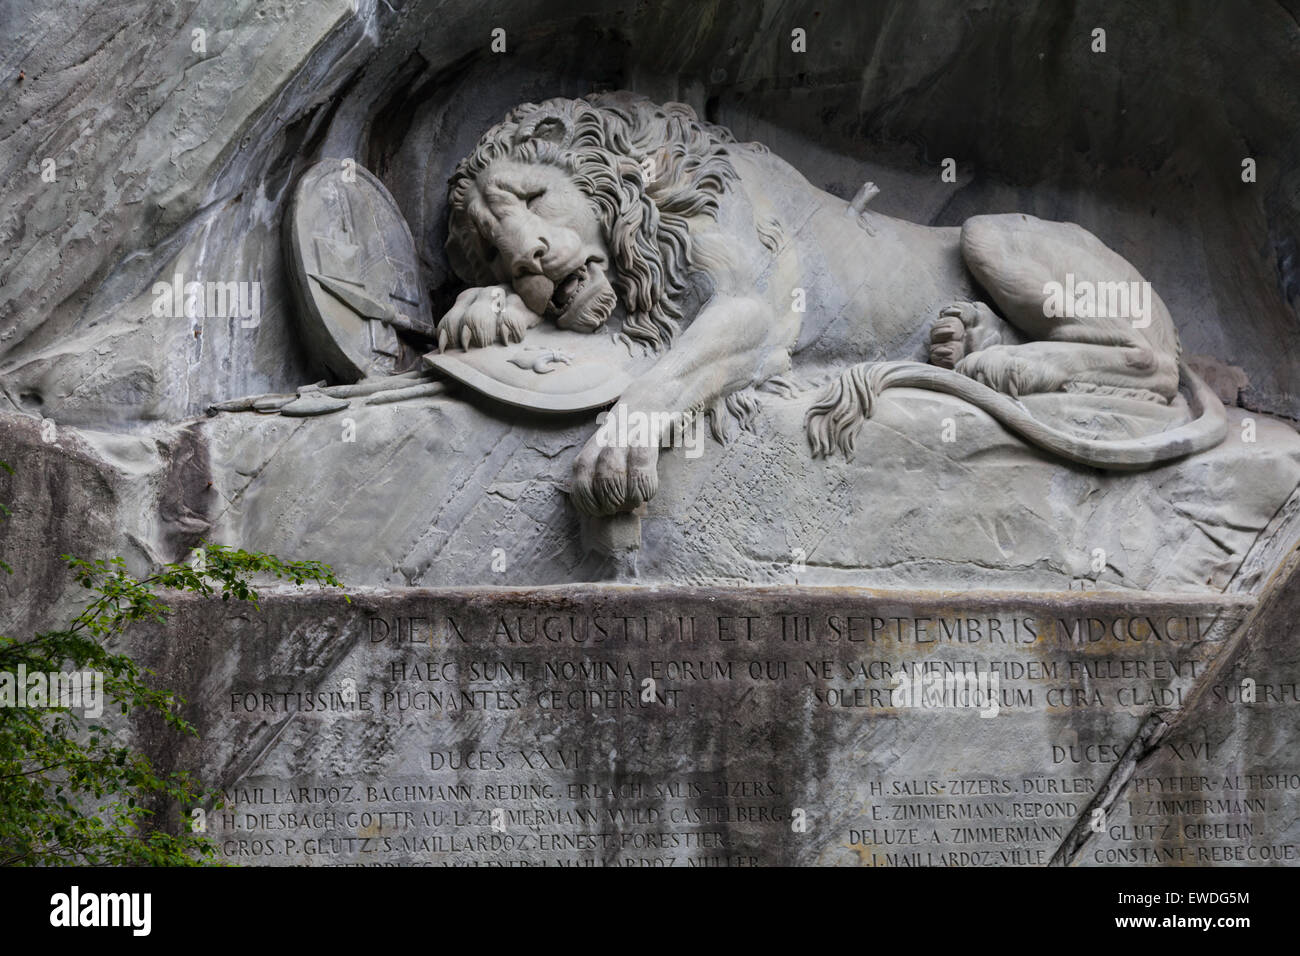 Die sterbenden Löwe Skulptur in Luzern, Schweiz Stockfotografie - Alamy